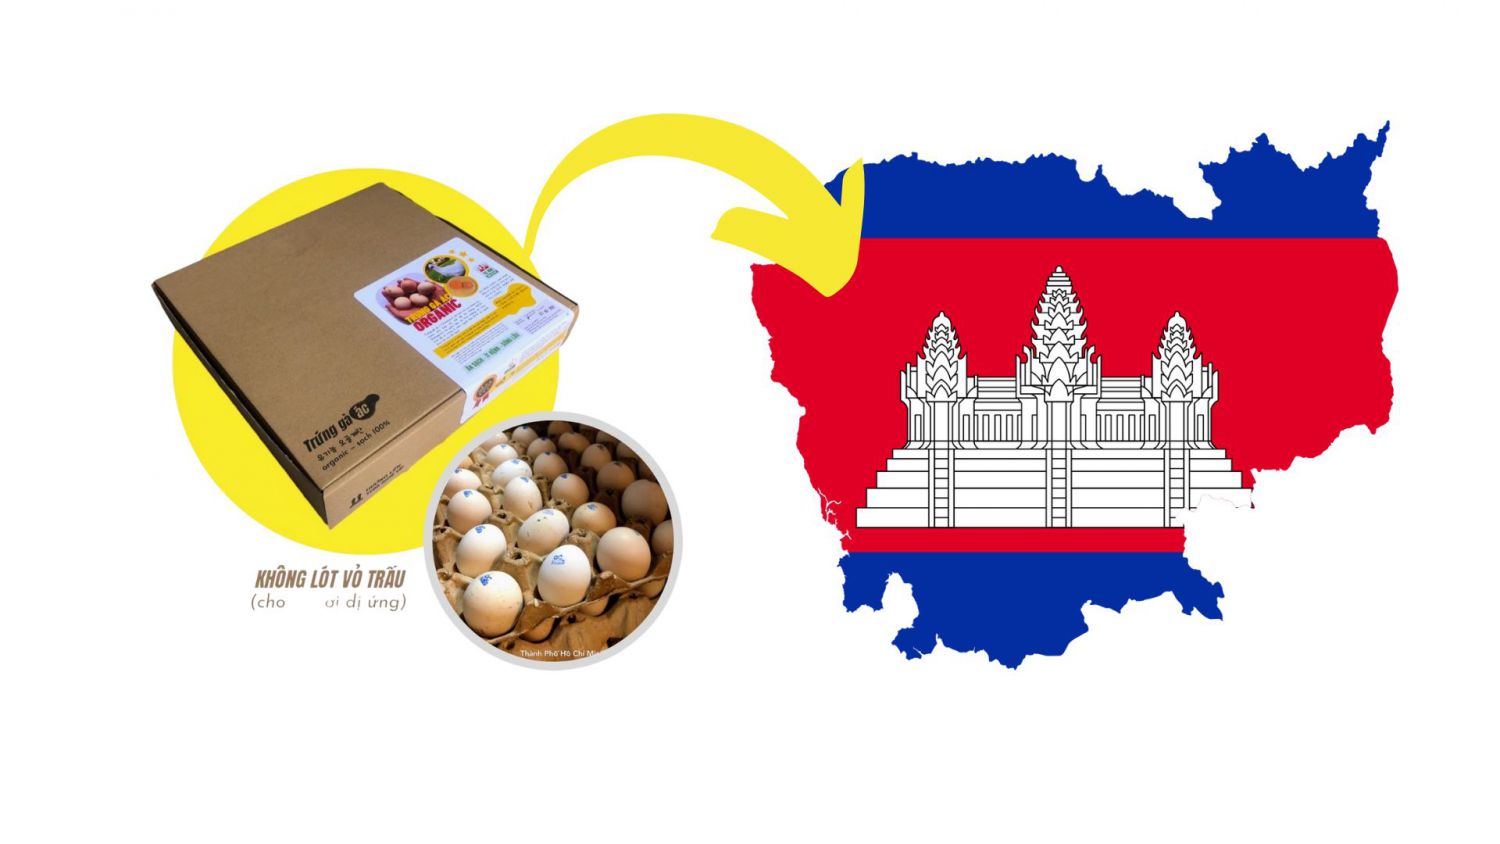 캄보디아 프놈펜의 실키 계란 유통을 위한 파트너십 기회